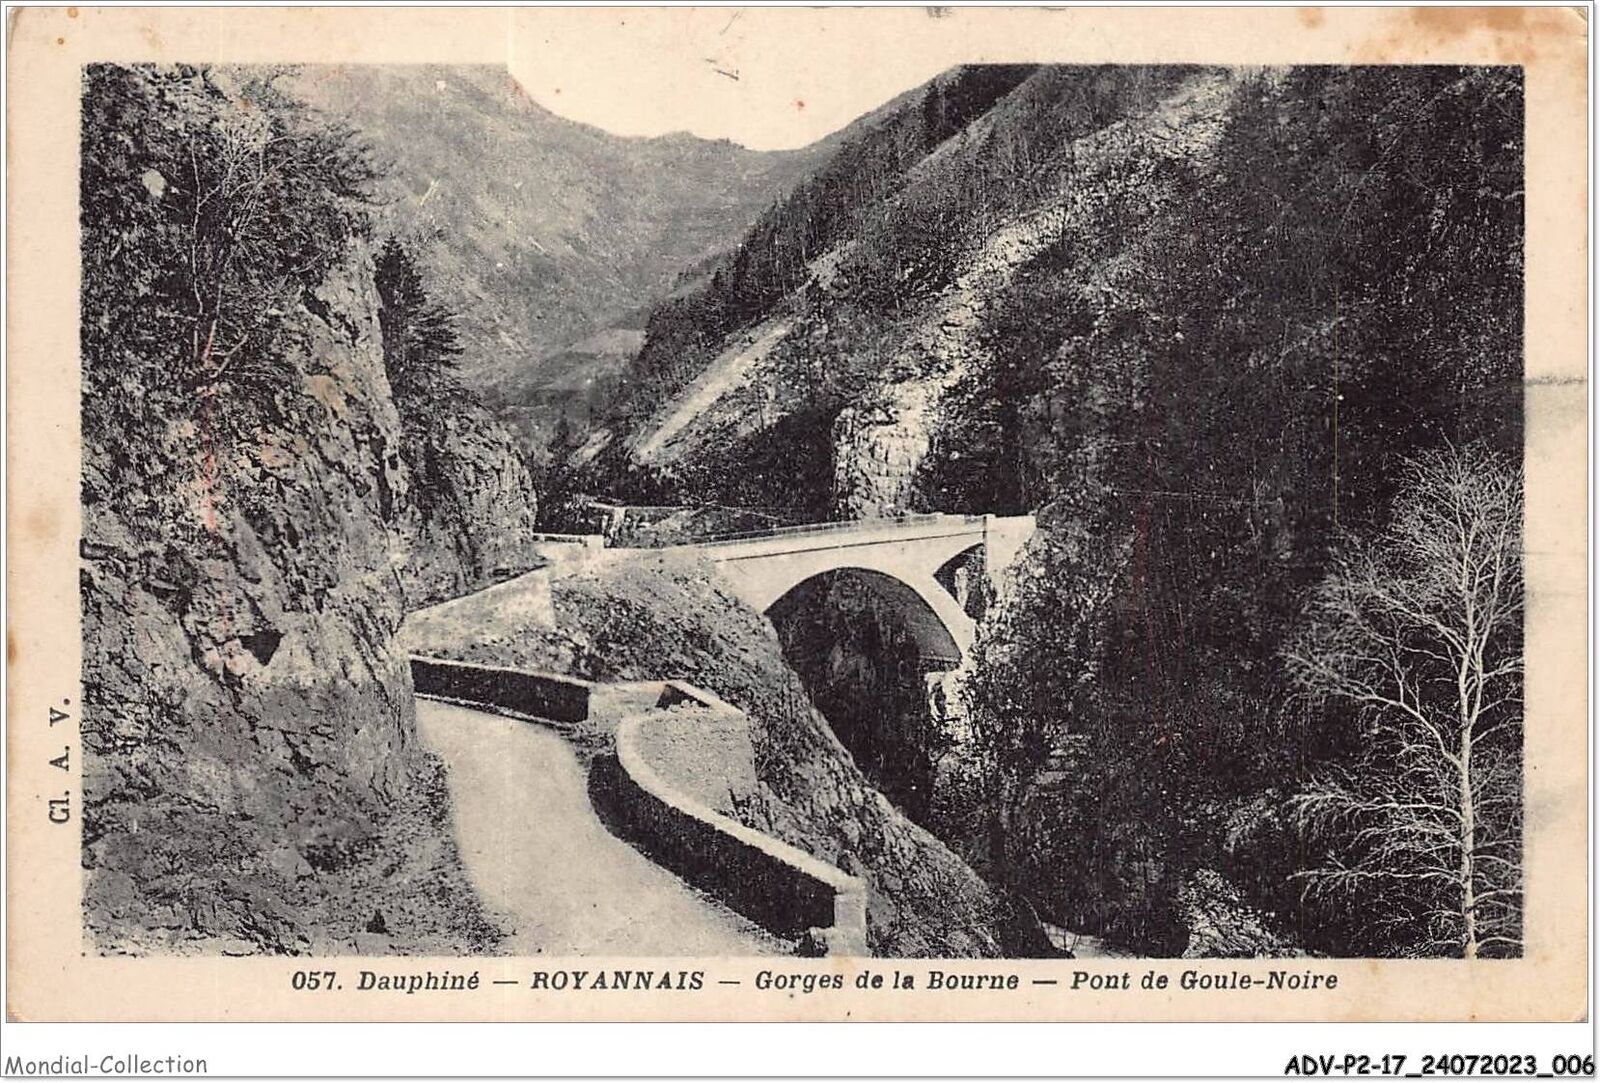 ADVP2-17-0097 - DOLPHIN - ROYANNAIS - gorges de la bourne - goul-noi bridge